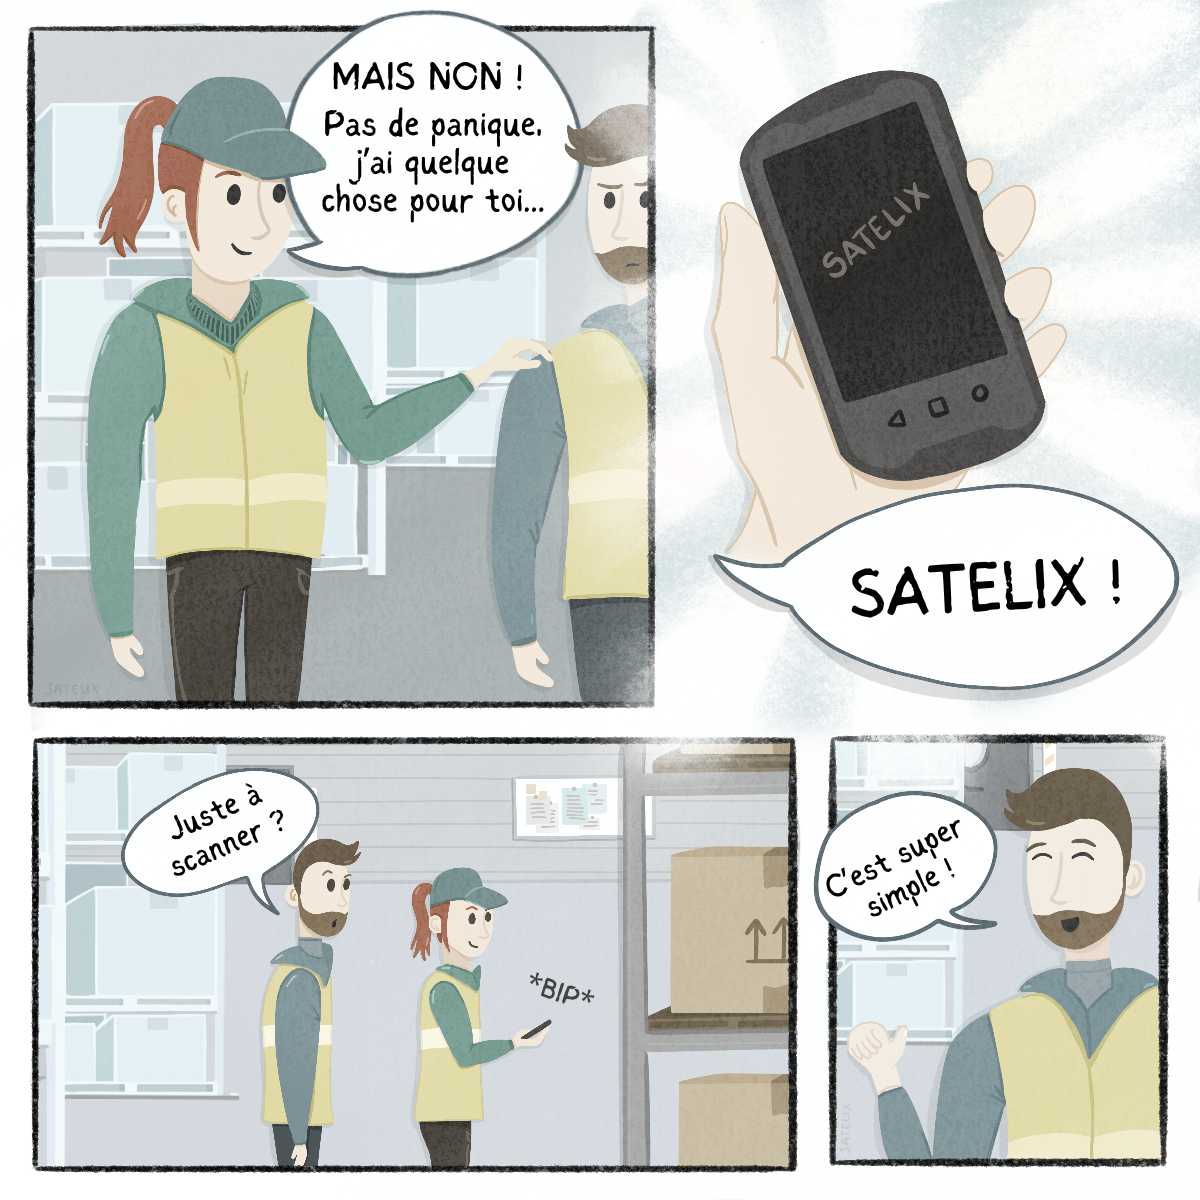 BD Satelix – 1-Inventaire – P2 – Satelix